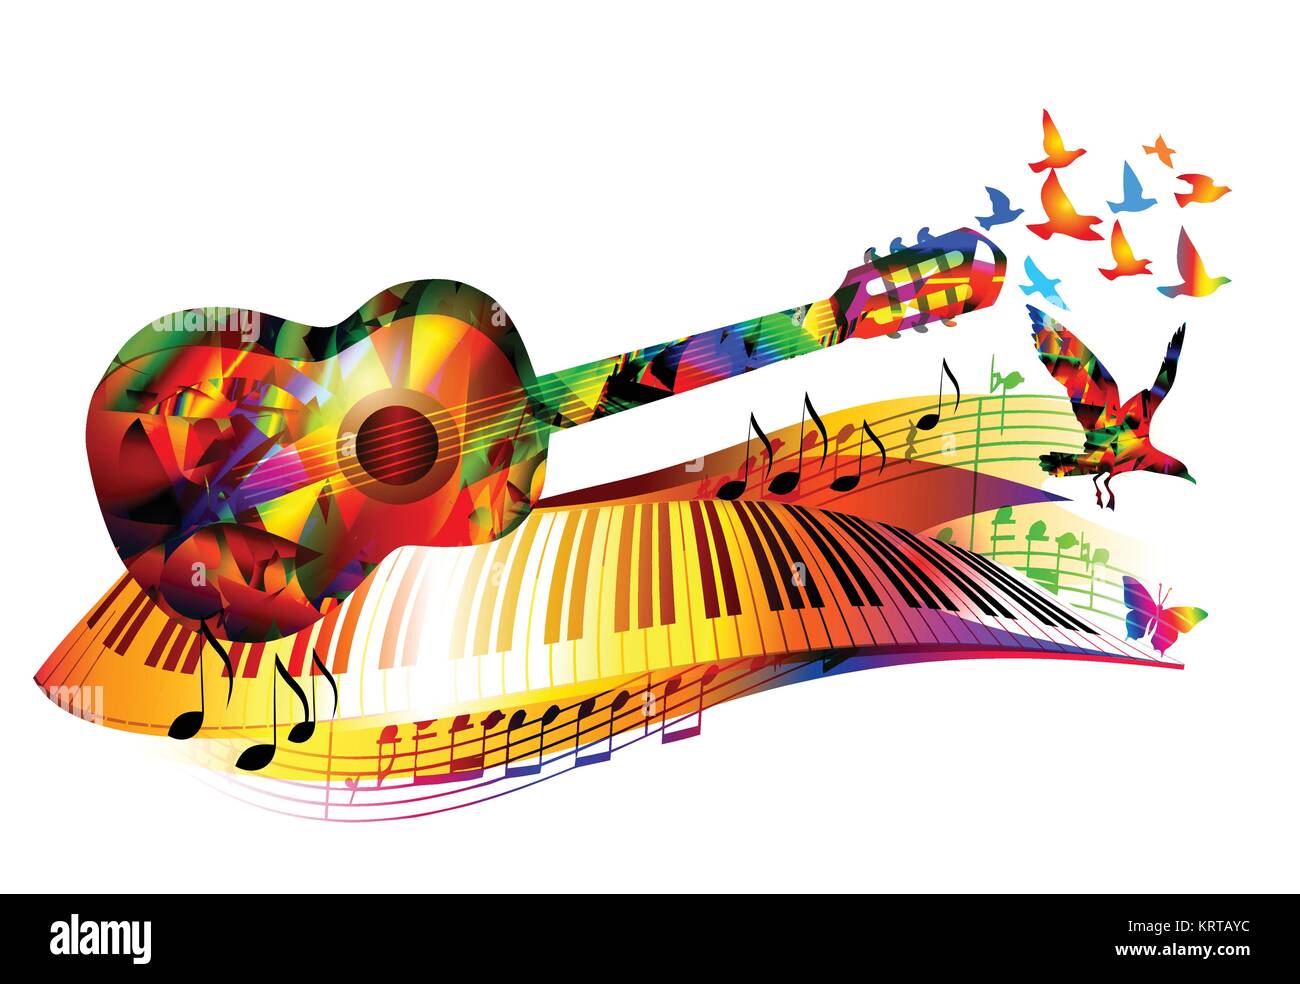 Bunte Musik Hintergrund mit Gitarre, Piano, Keyboard, fliegende Vögel und  Noten Stock-Vektorgrafik - Alamy